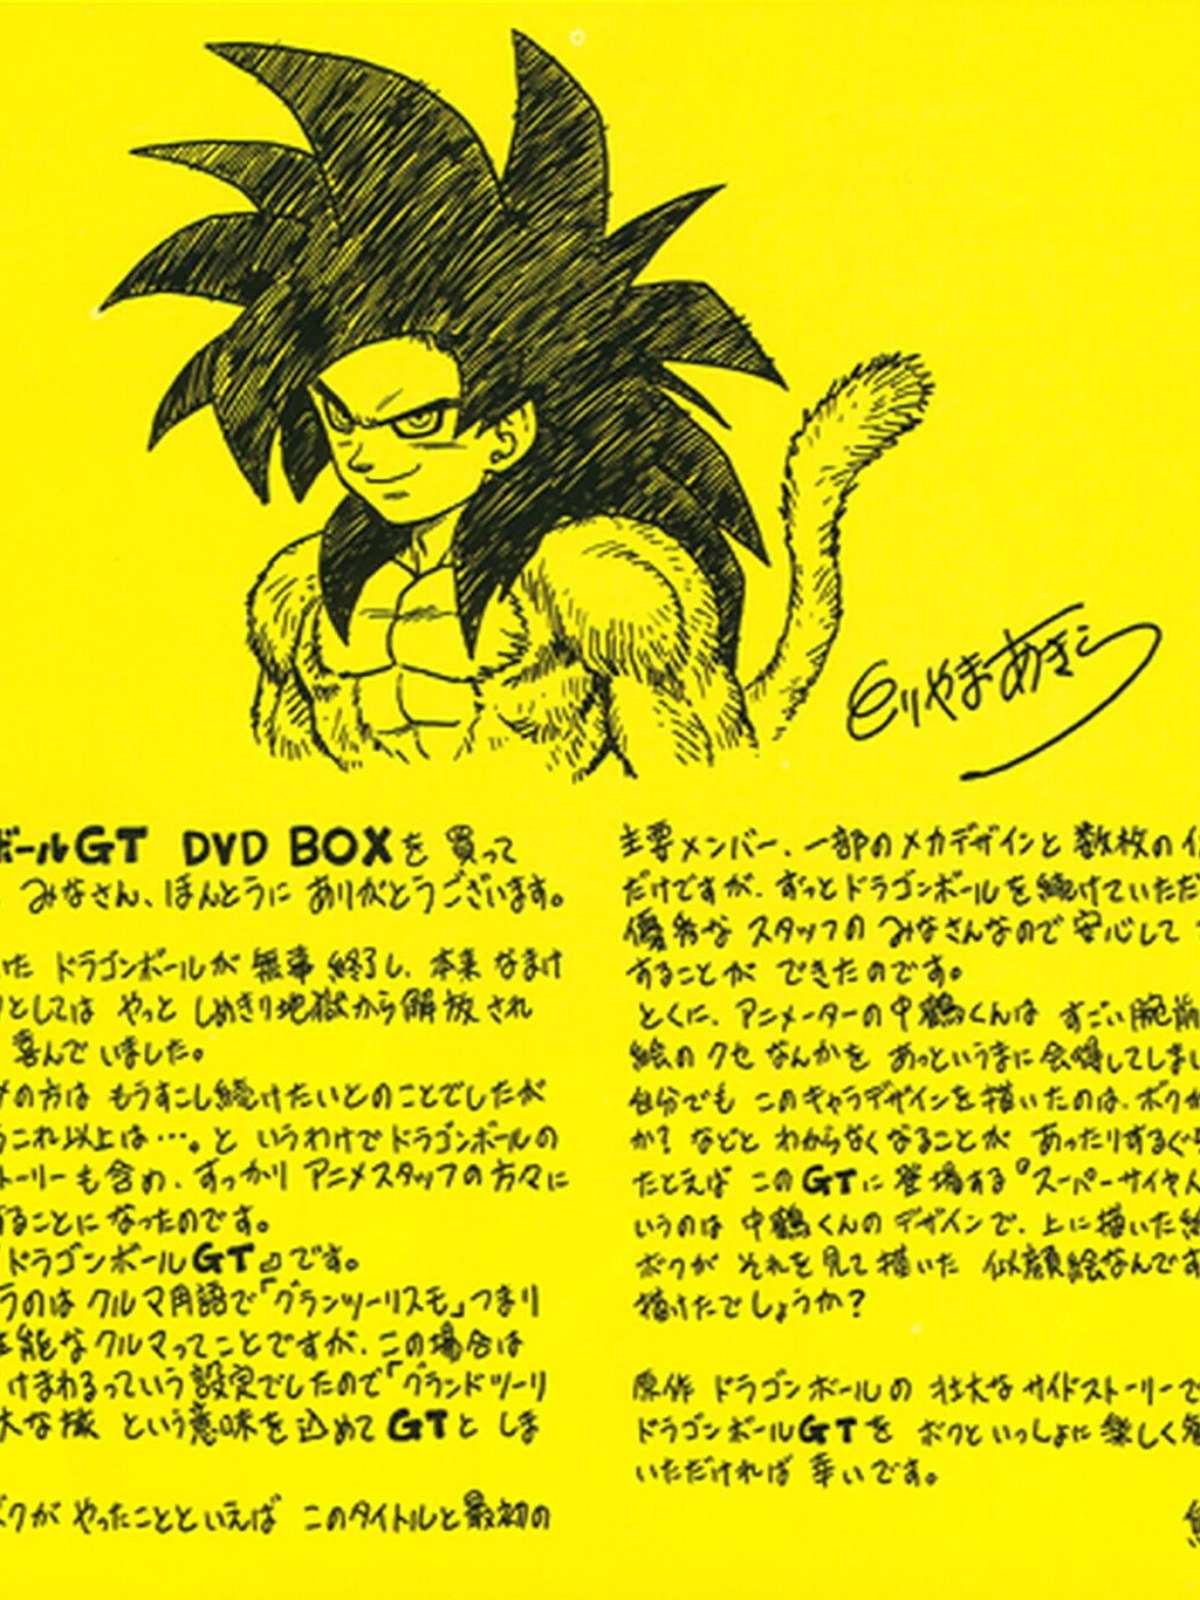 Autor de Dragon Ball revela por que parou de desenhar mangá